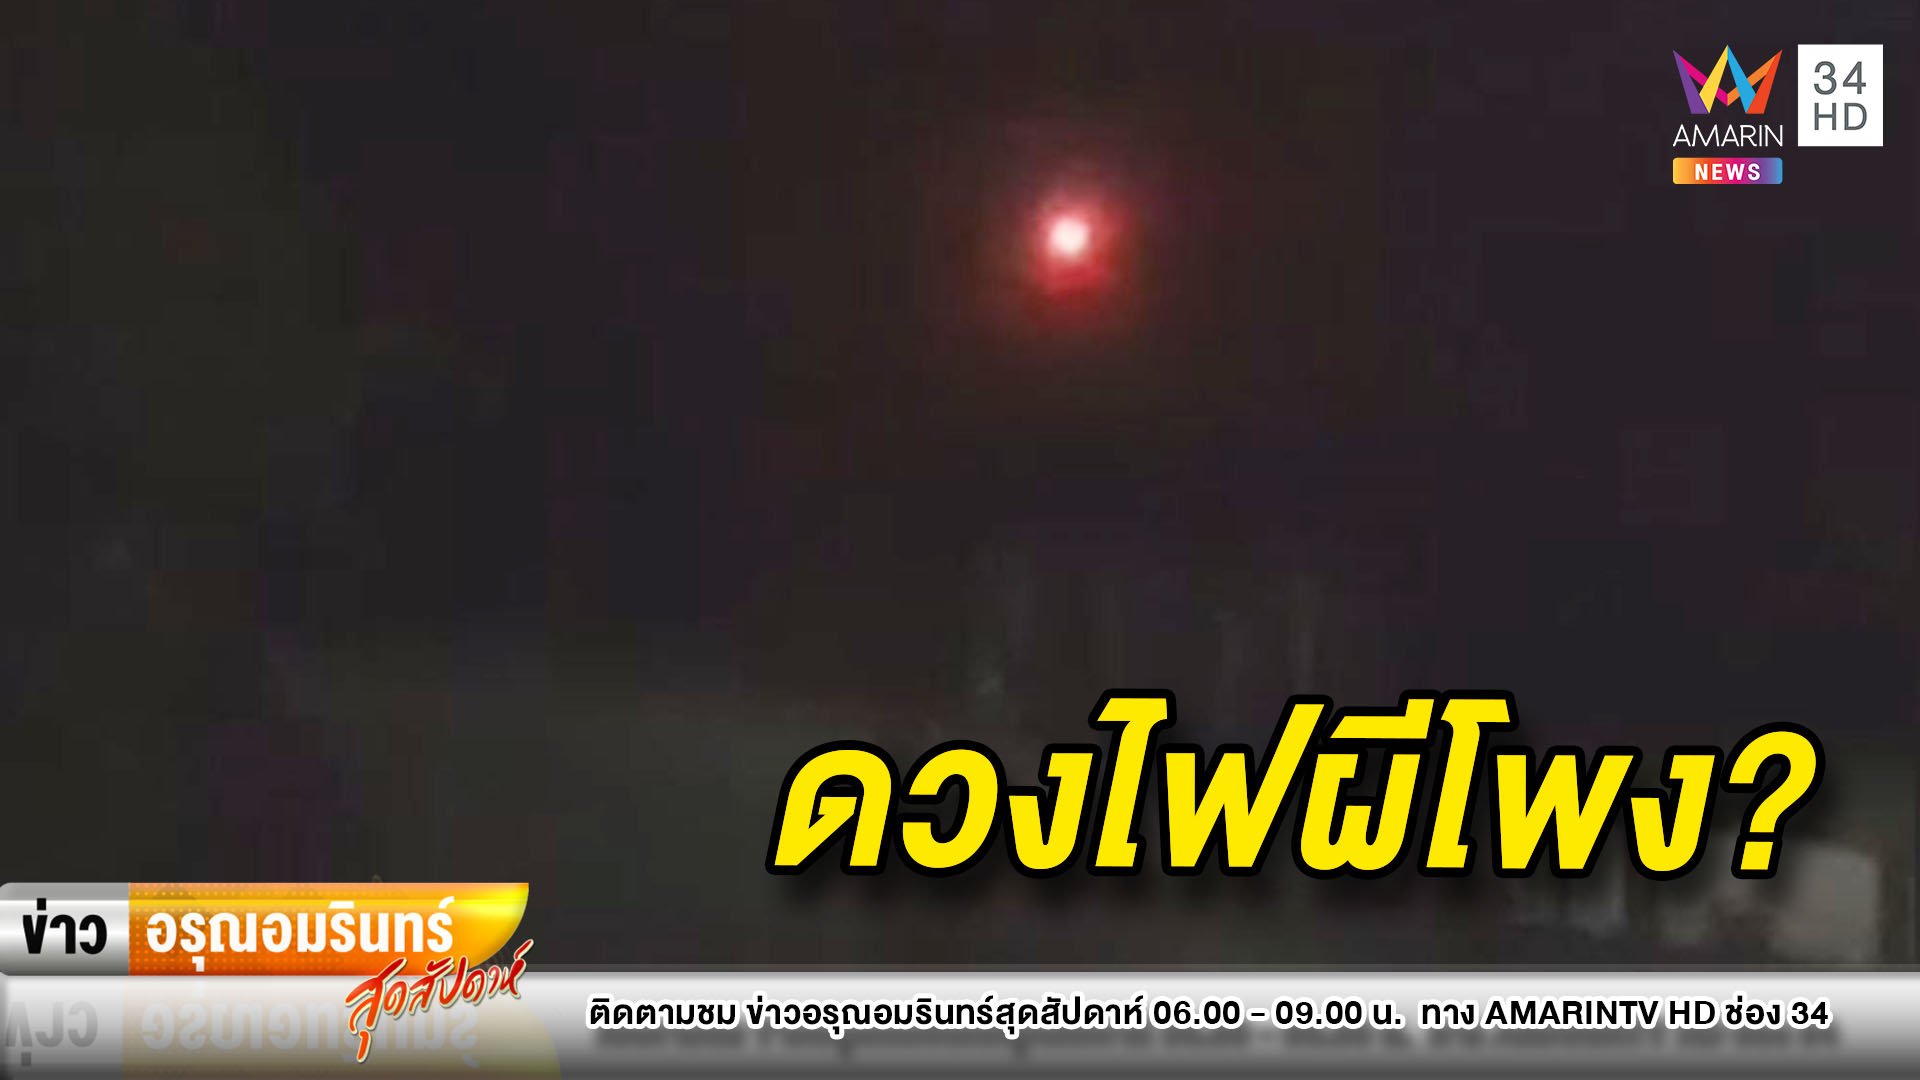 ชาวสุรินทร์ผวา! พบแสงประหลาด เชื่อเป็นดวงไฟผีโพง  | ข่าวอรุณอมรินทร์ | 6 ก.ย. 63 | AMARIN TVHD34